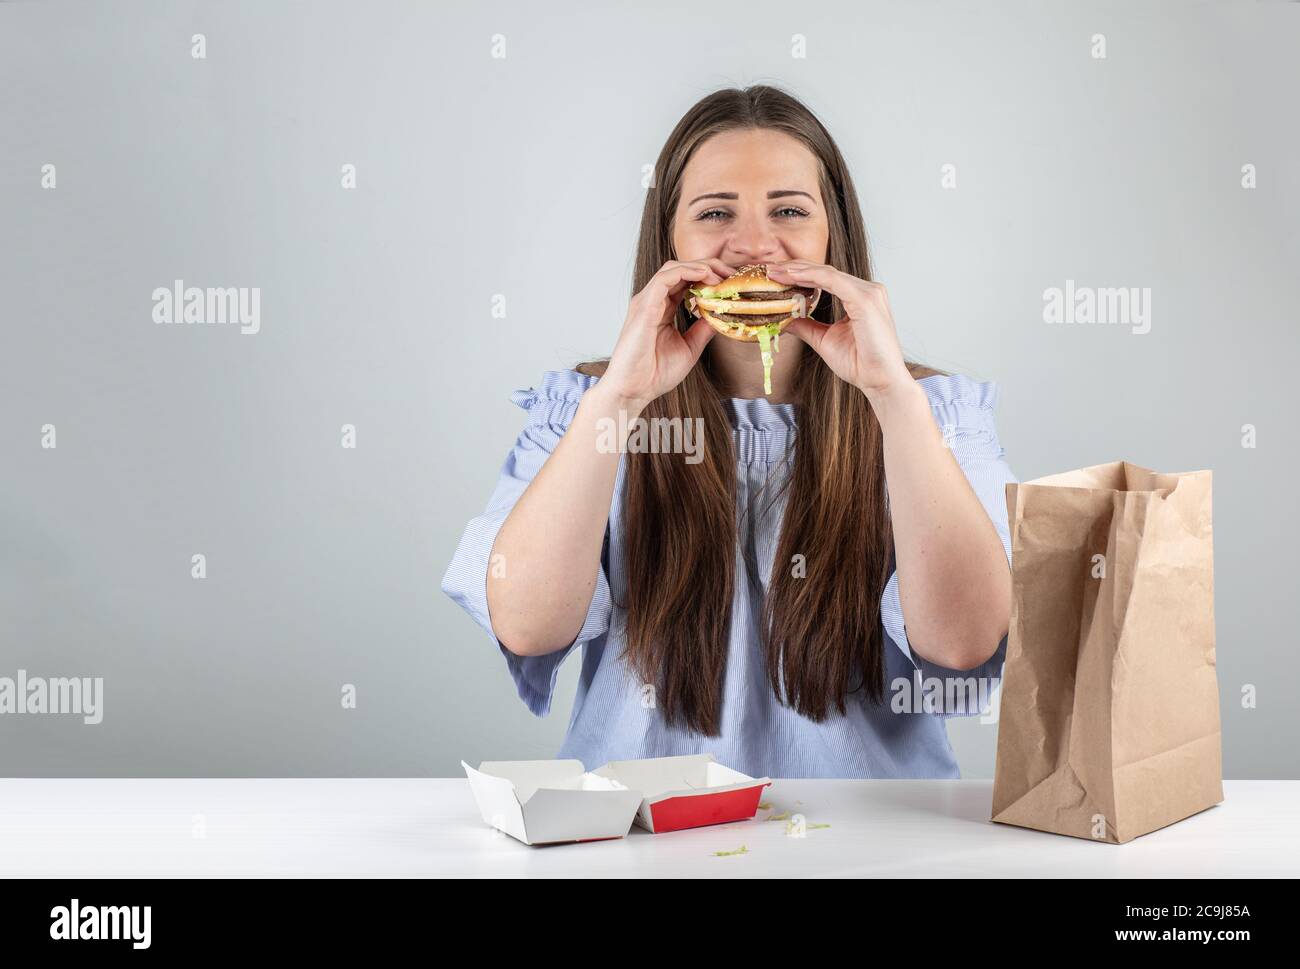 Ritratto di una bella giovane donna che mangia un hamburger, isolato su sfondo bianco Foto Stock